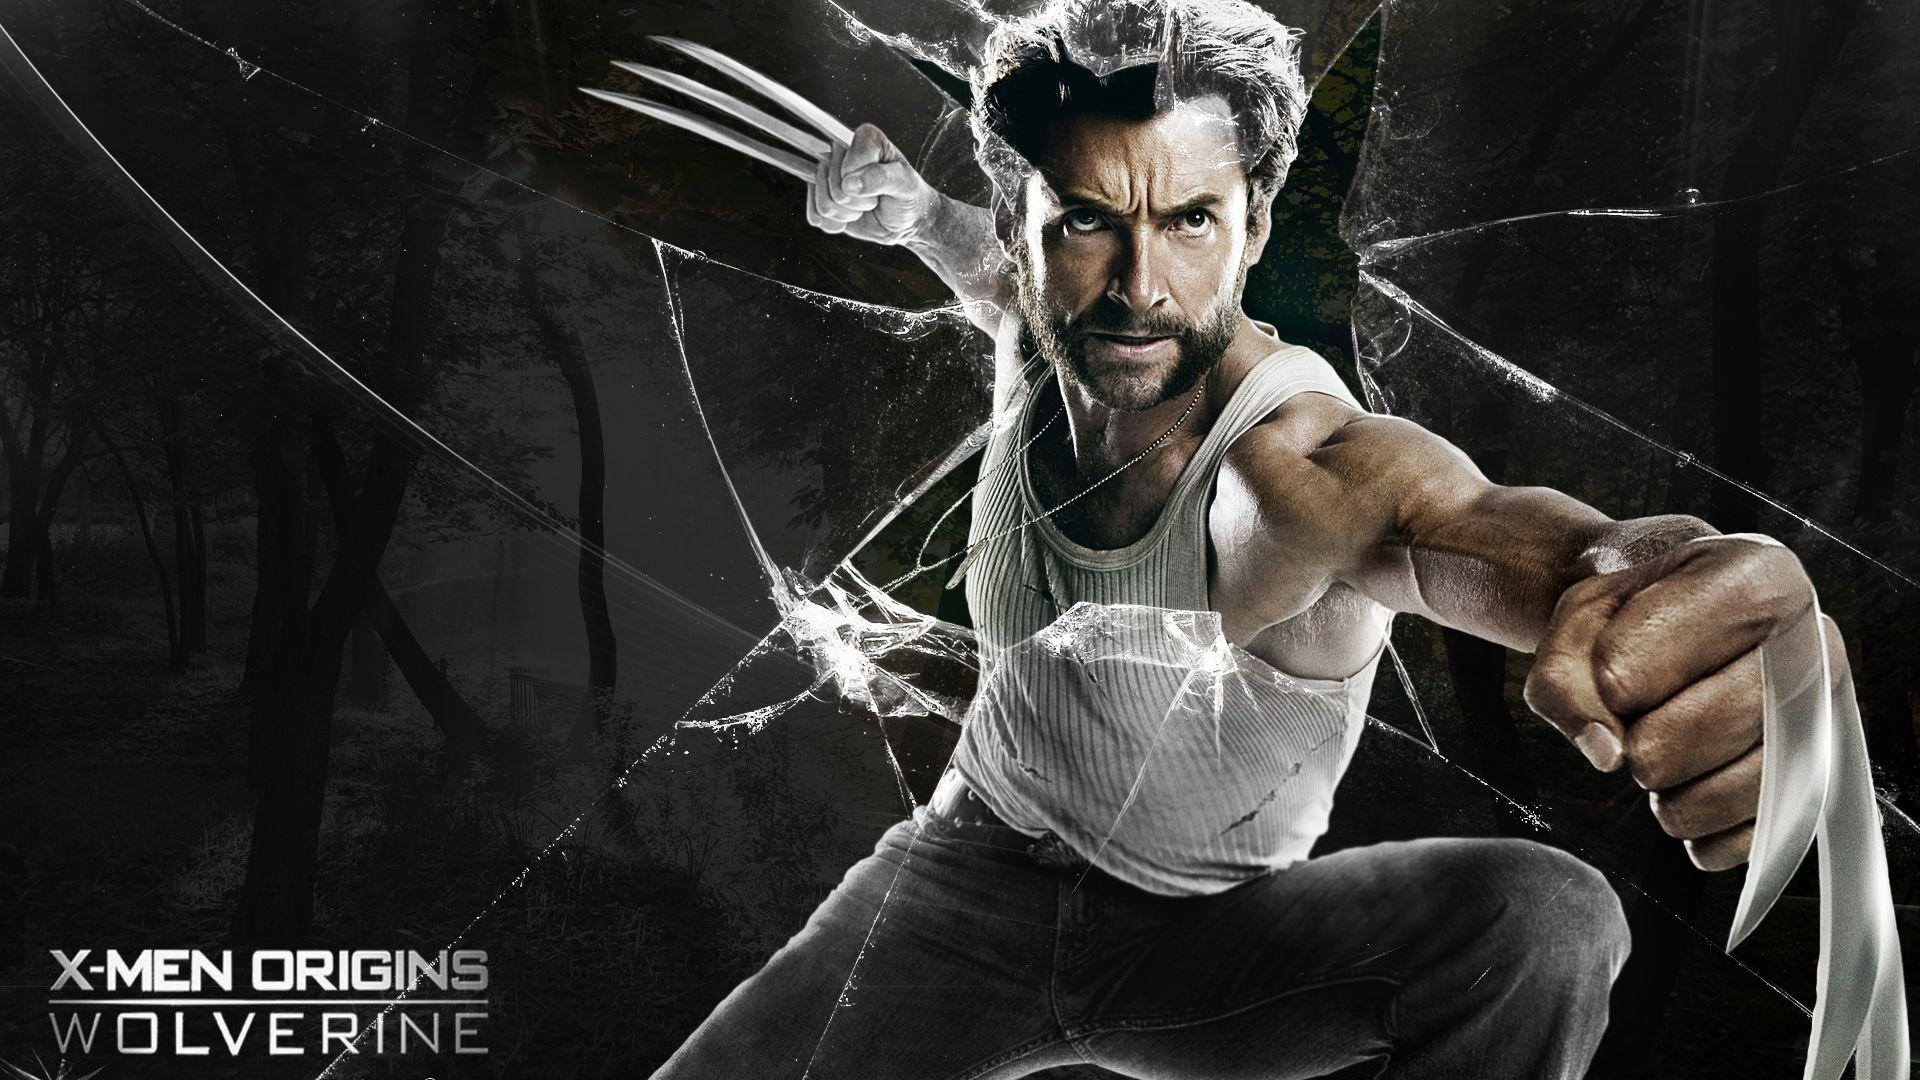 Wolverine Wallpaper 1080p. Wolverine picture, Wolverine, Wolverine movie